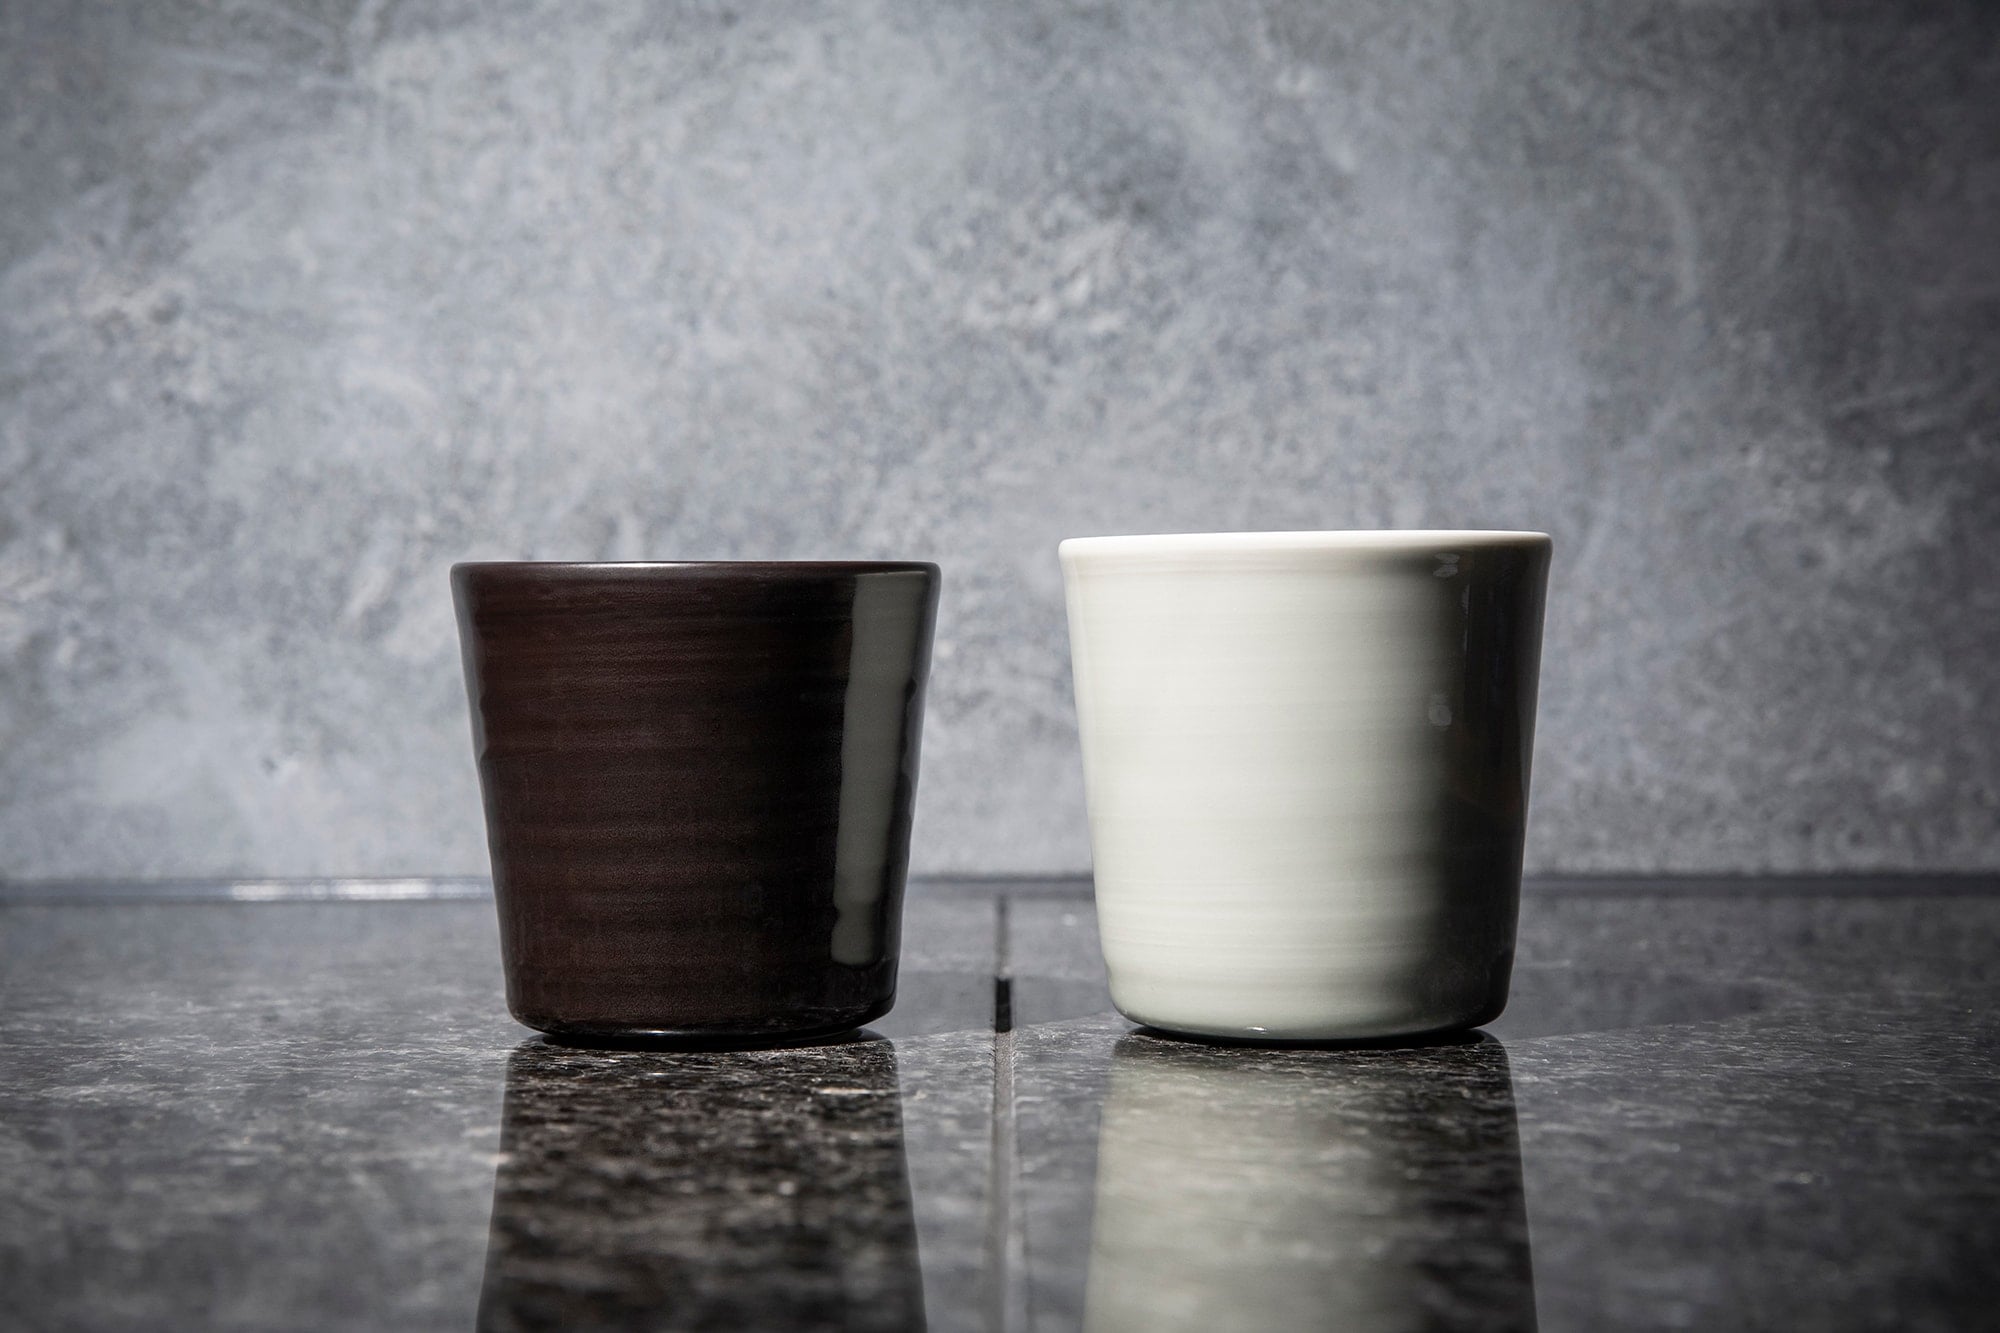 有田烧的窑场“香兰社”与Ingegerd Eva Maria Råman合作制作的瓷器杯组。